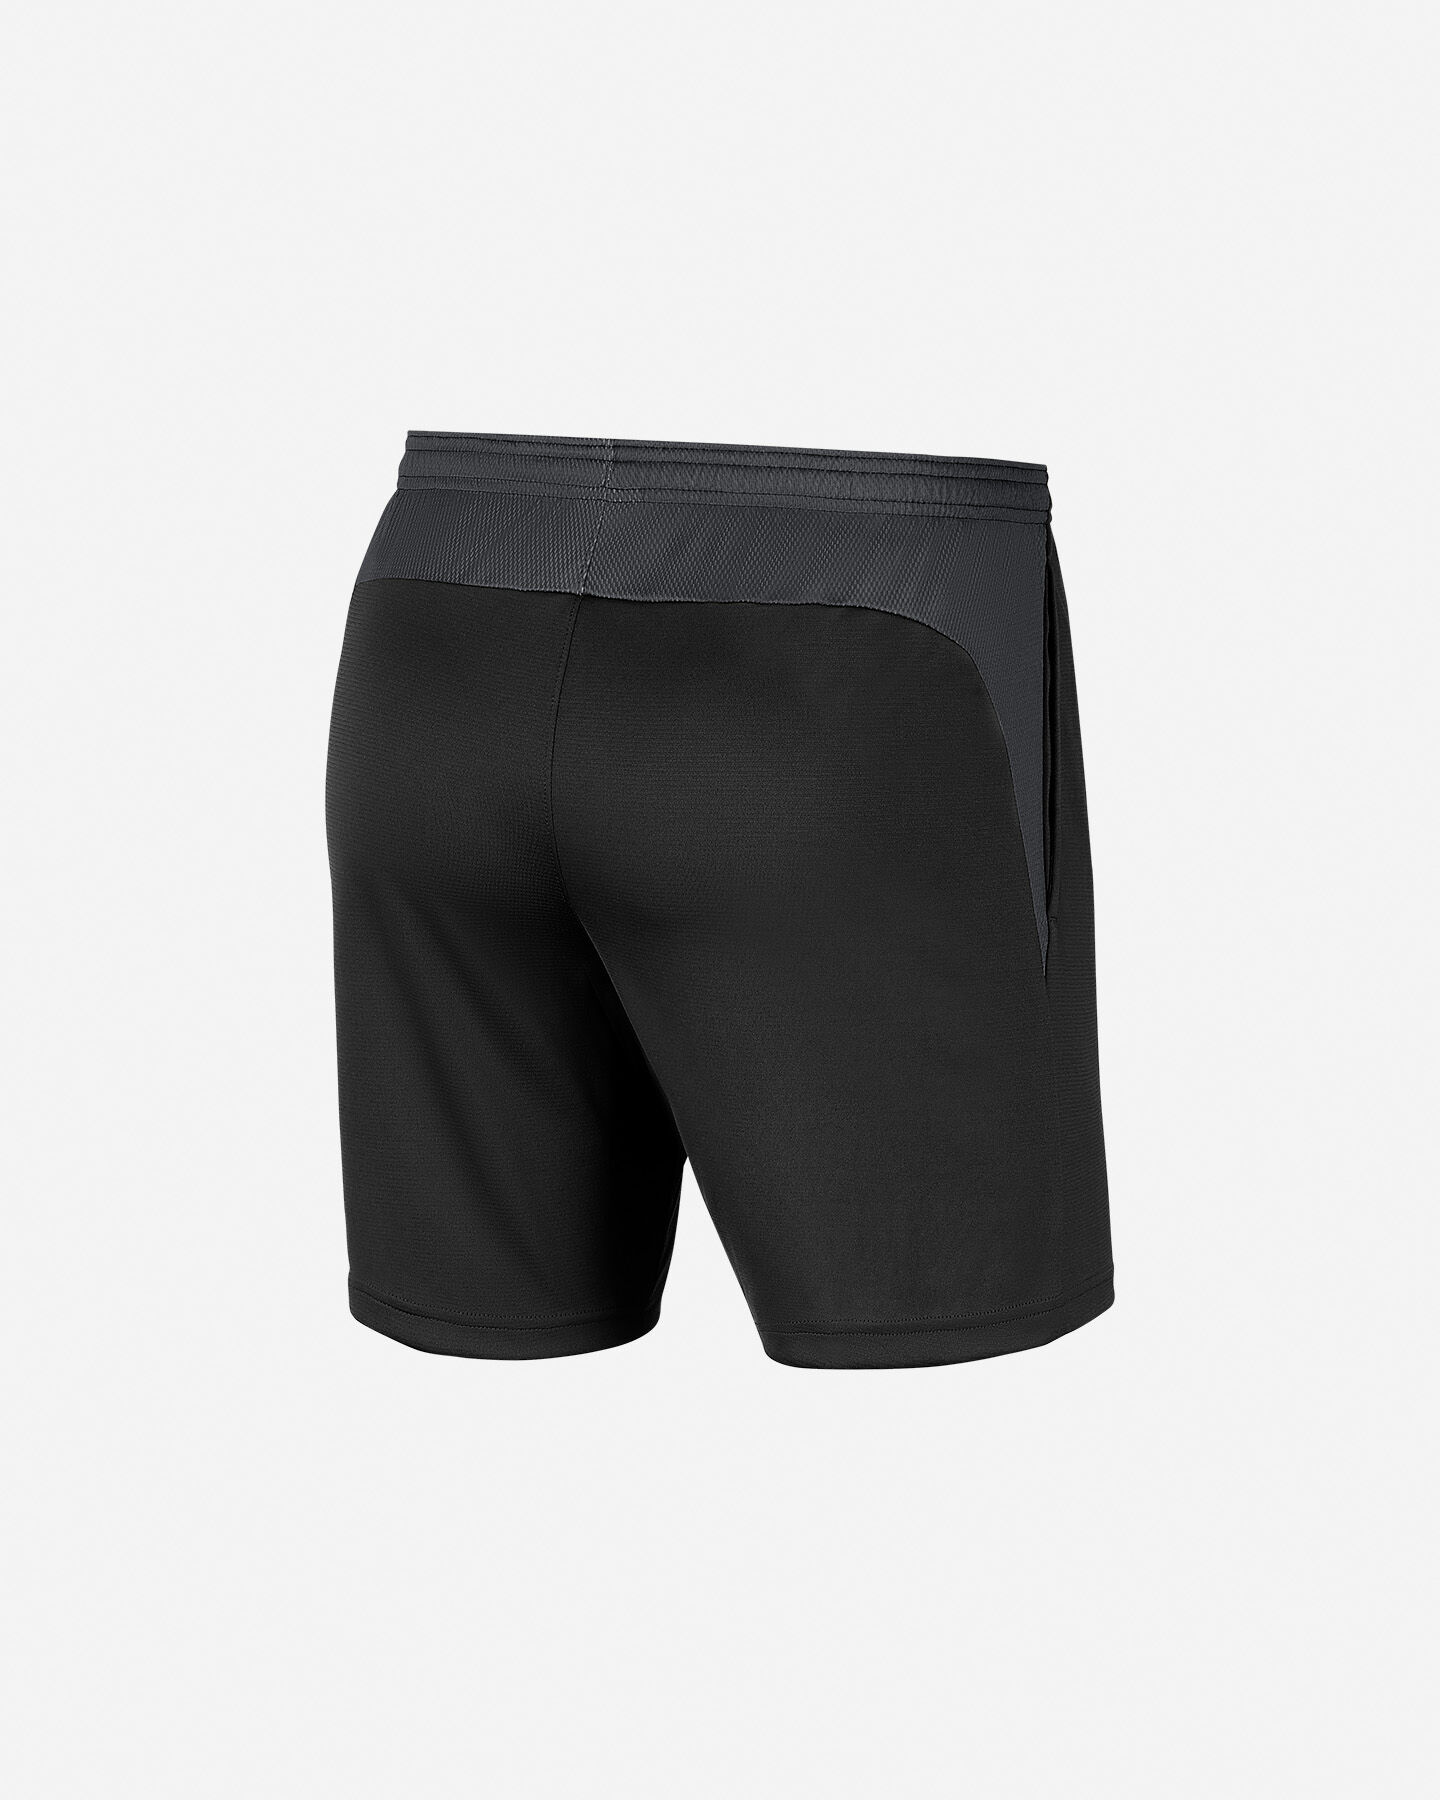  Pantaloncini calcio NIKE DRI-FIT ACADEMY M S5163430|010|S scatto 2